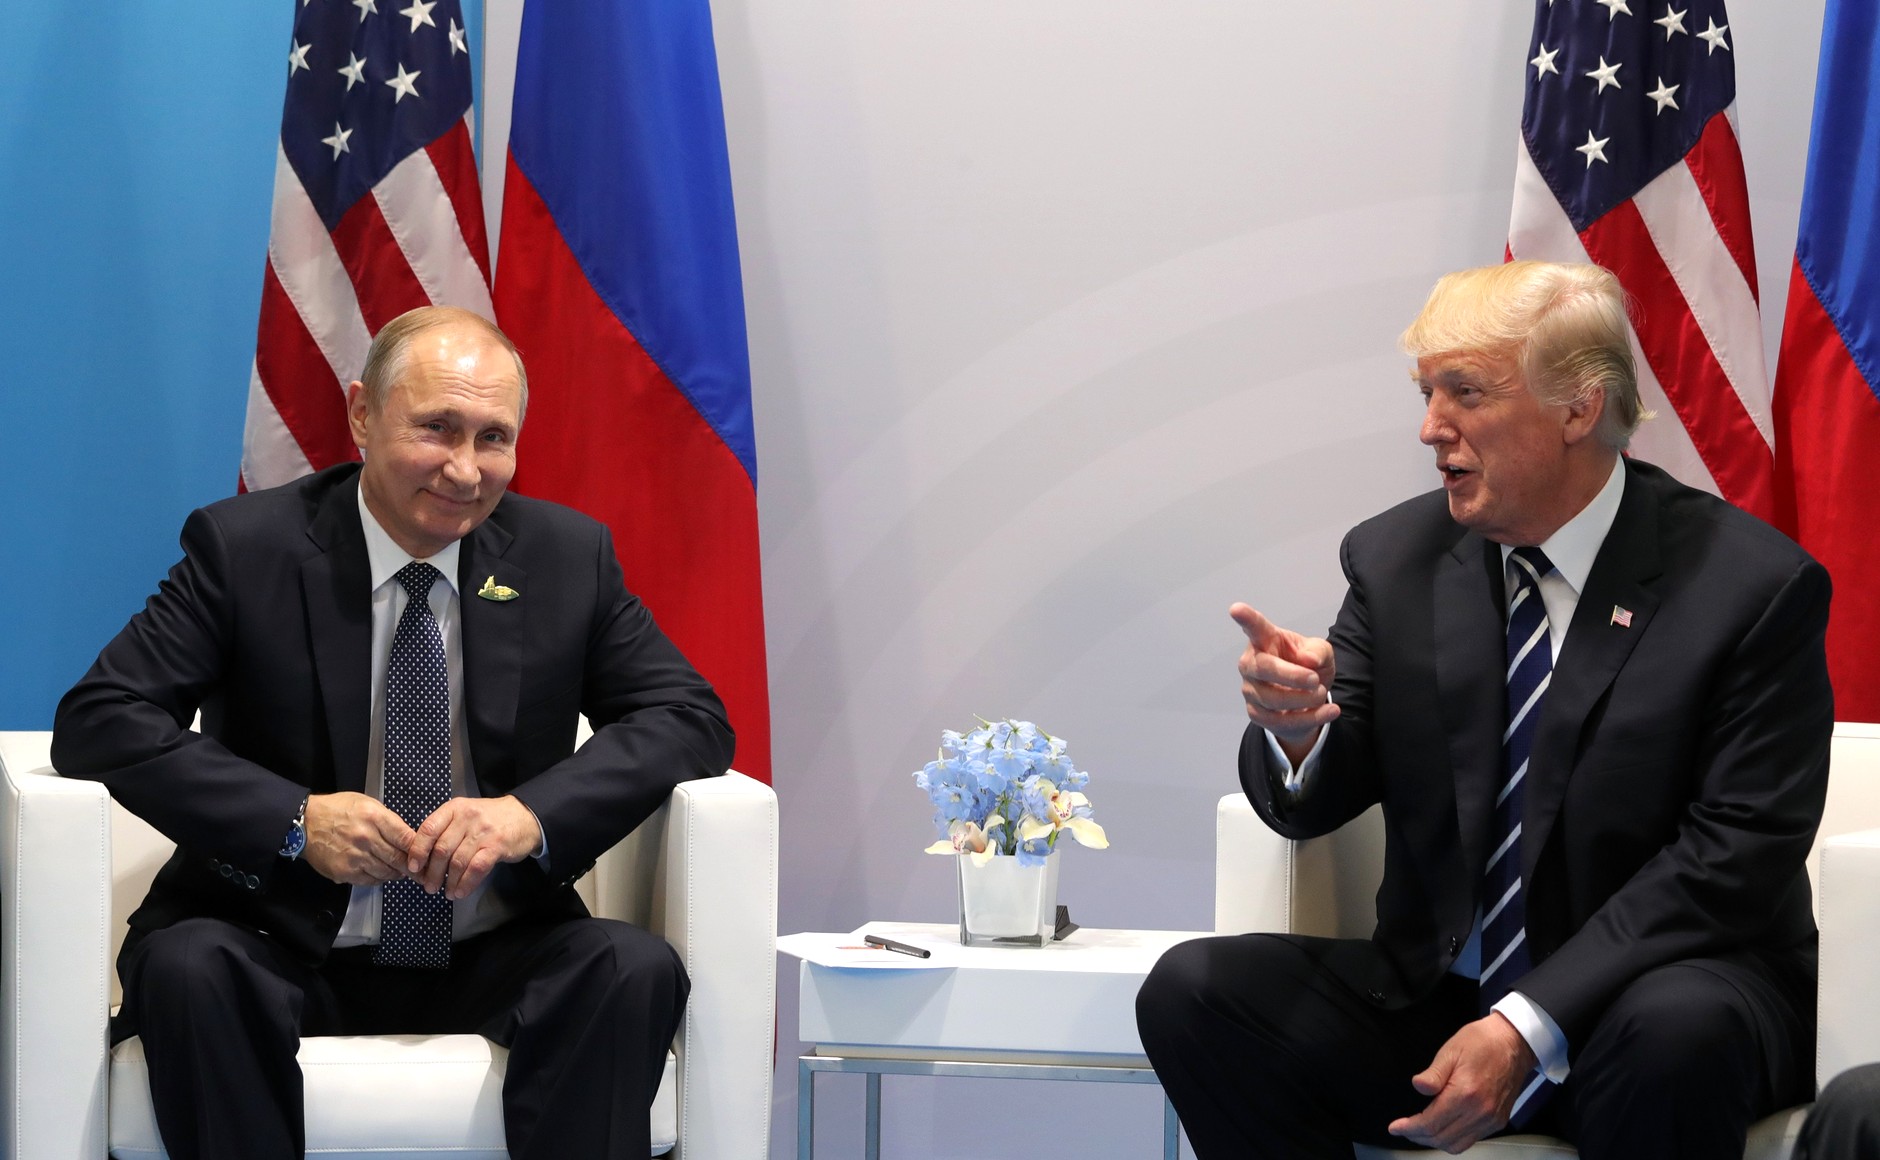 Что говорит язык жестов Путина и Трампа на их первой встрече